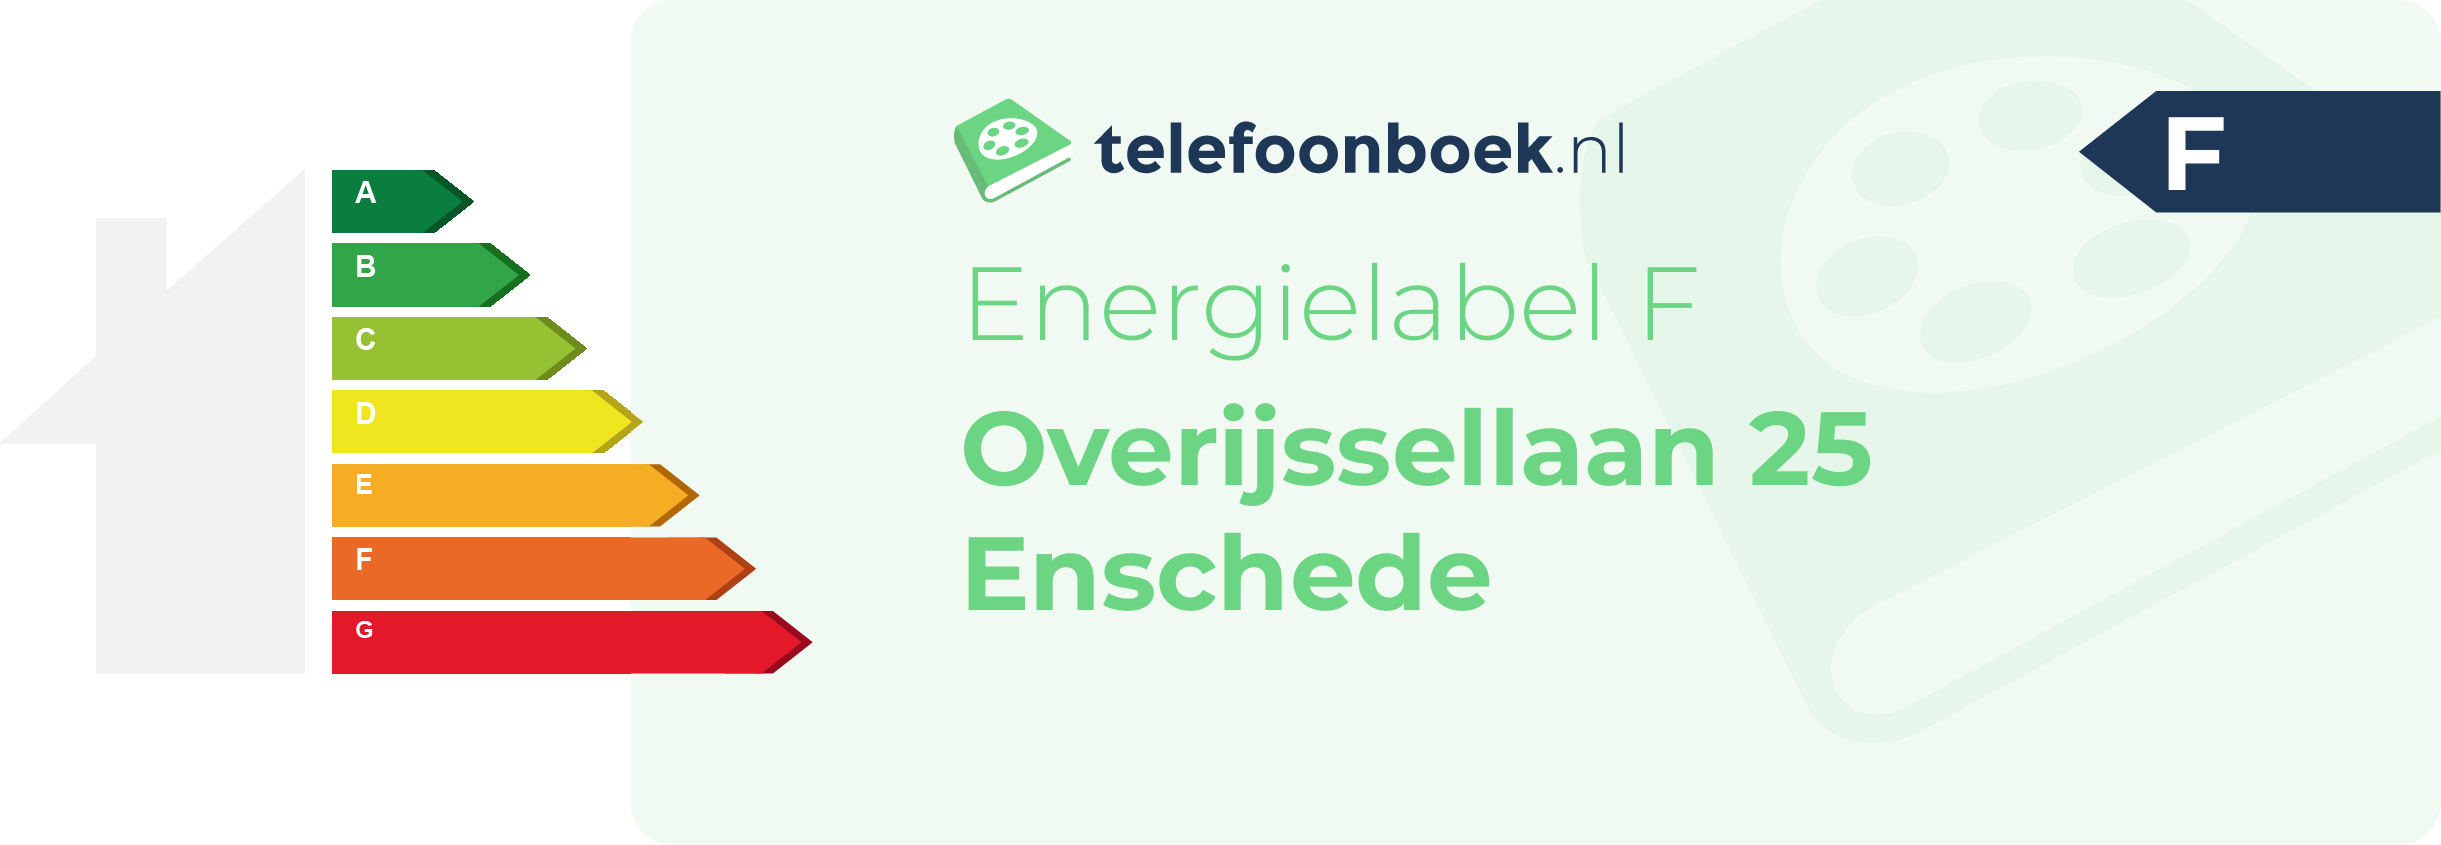 Energielabel Overijssellaan 25 Enschede